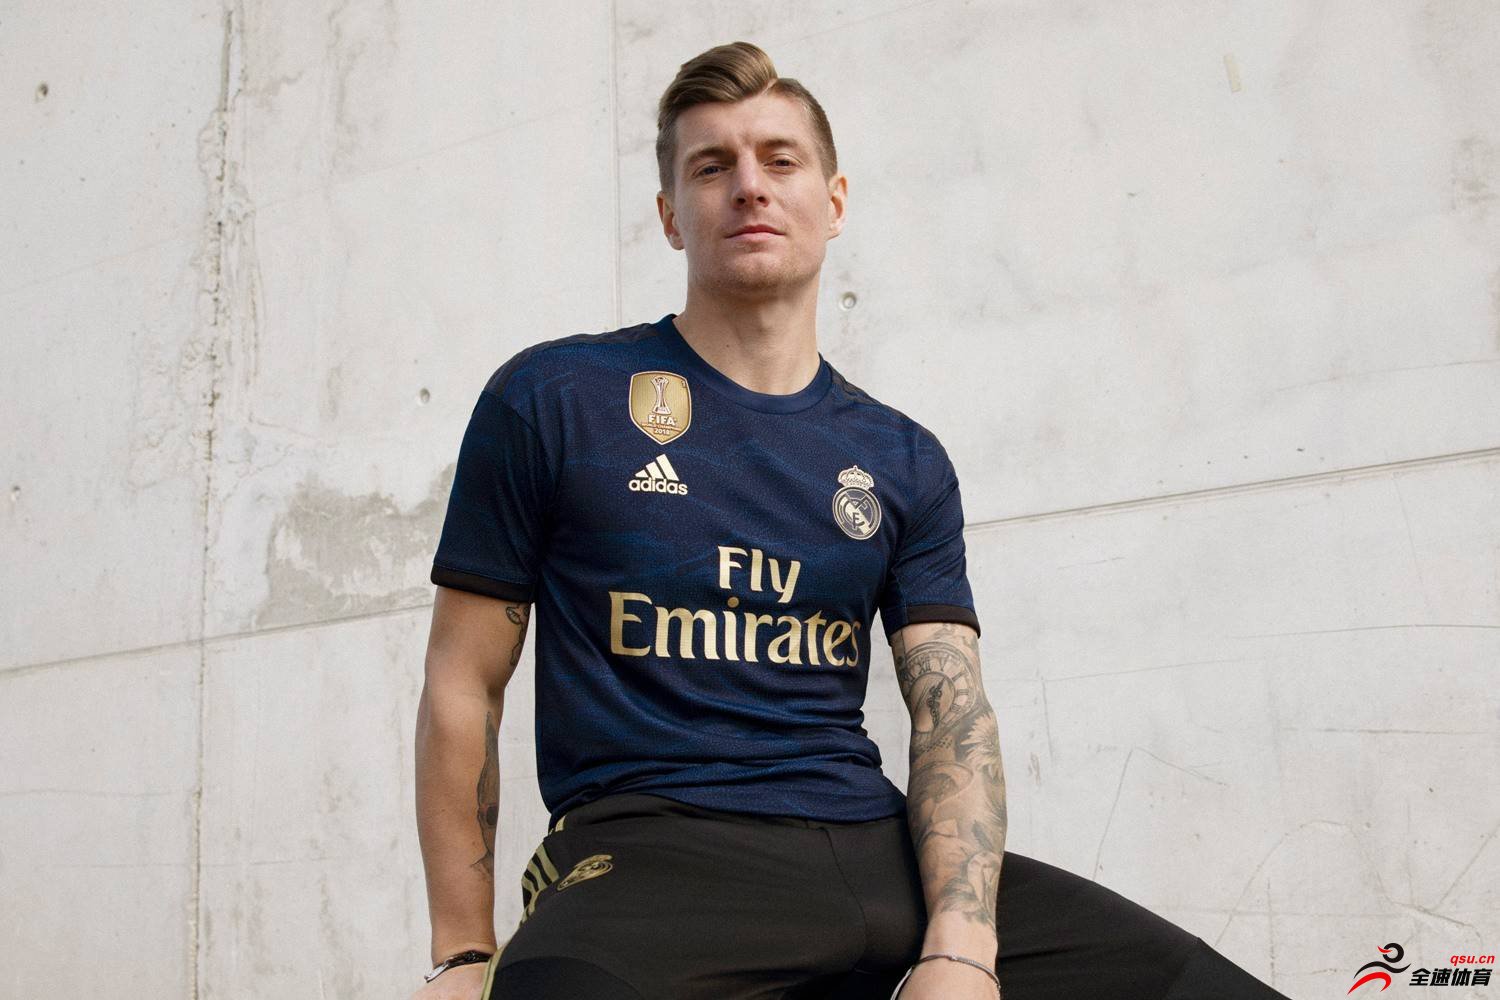 阿迪达斯发布了皇家马德里2019/20赛季的客场球衣